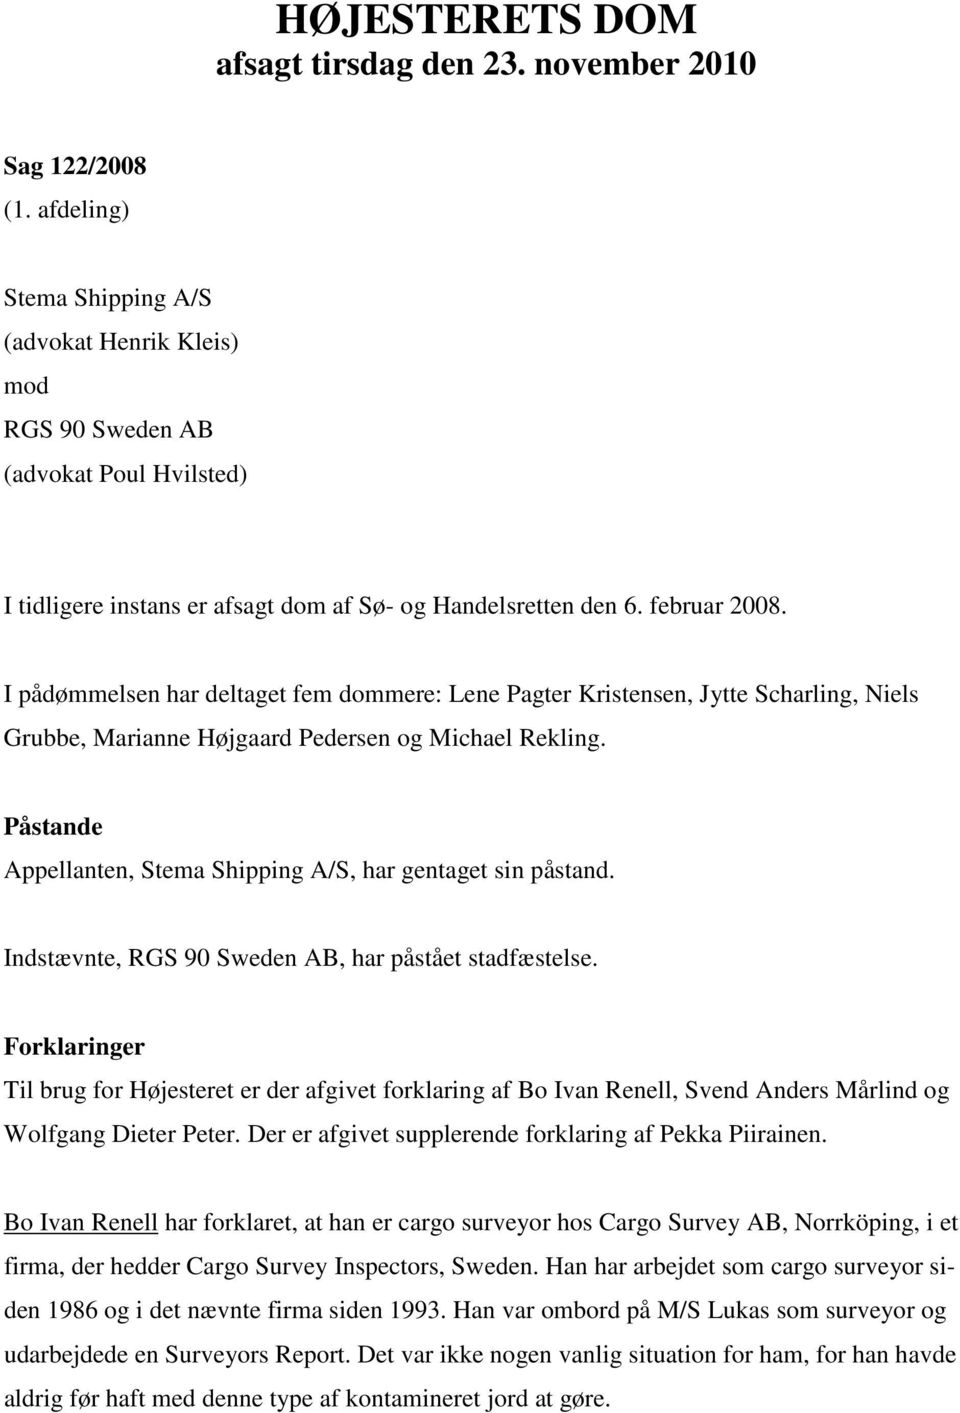 I pådømmelsen har deltaget fem dommere: Lene Pagter Kristensen, Jytte Scharling, Niels Grubbe, Marianne Højgaard Pedersen og Michael Rekling.